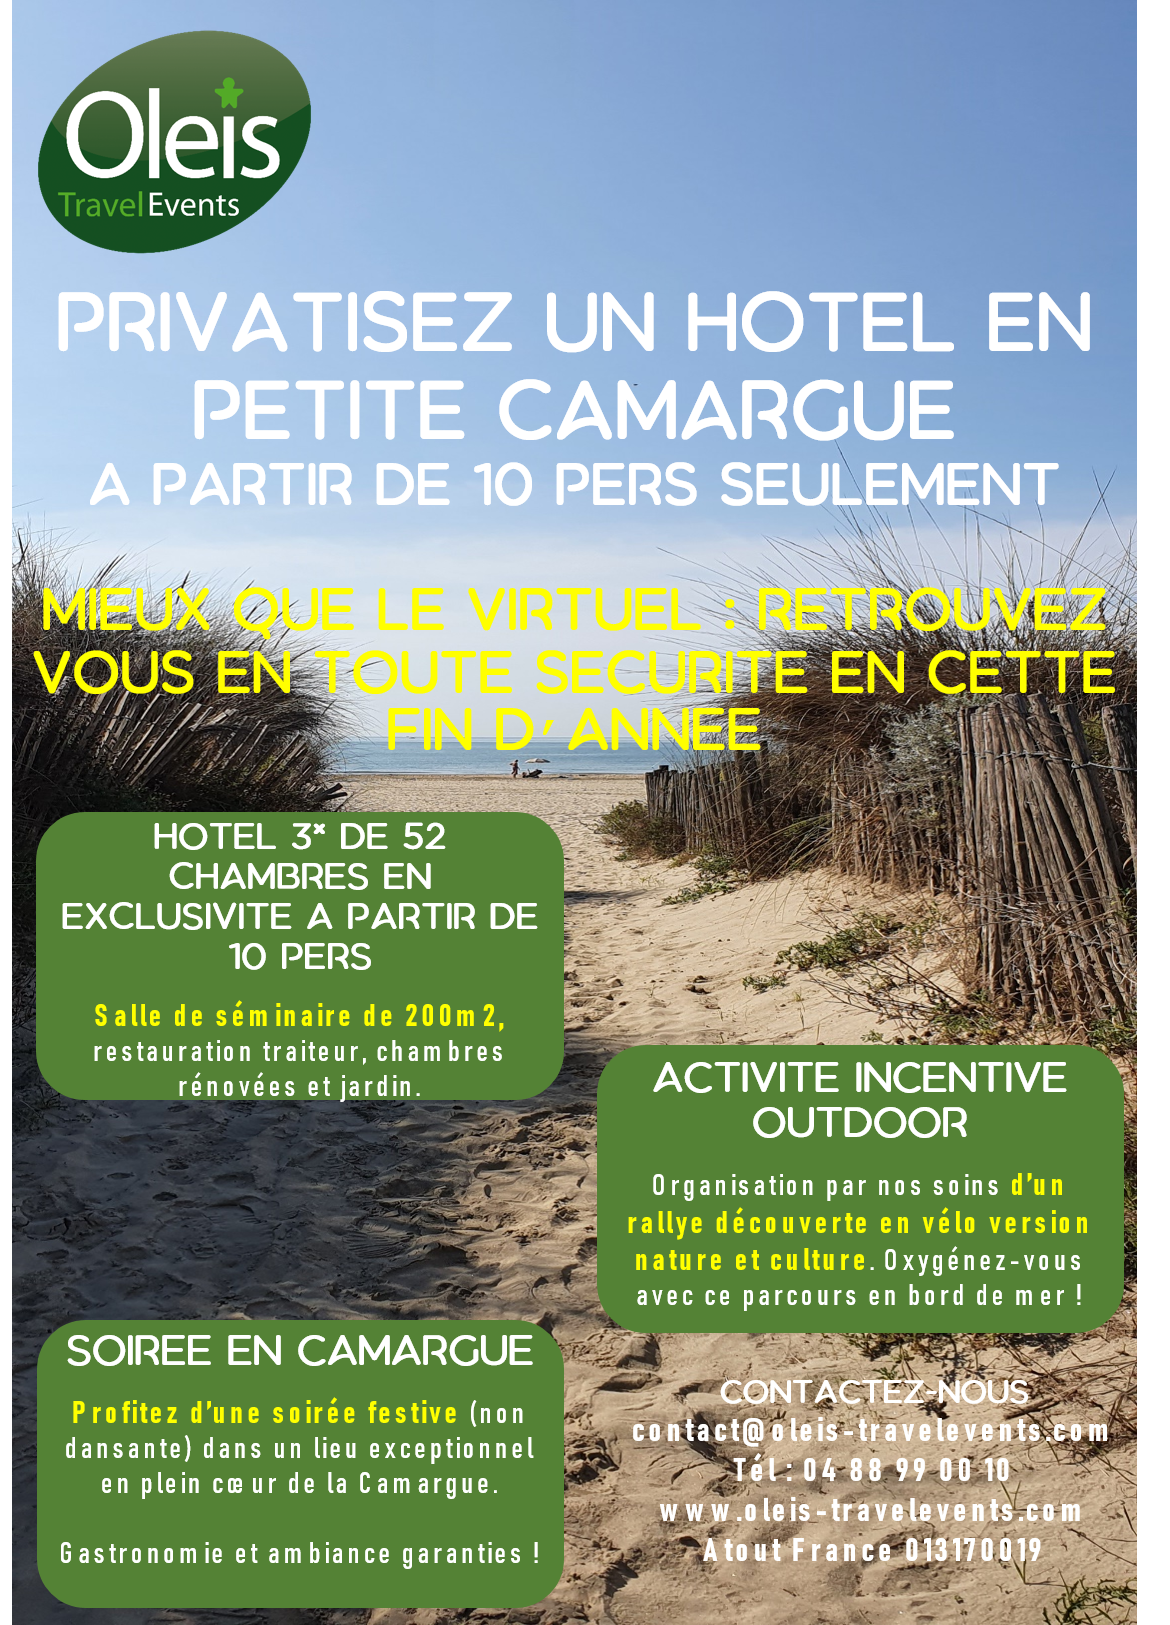 Privatisez un hôtel en Petite Camargue